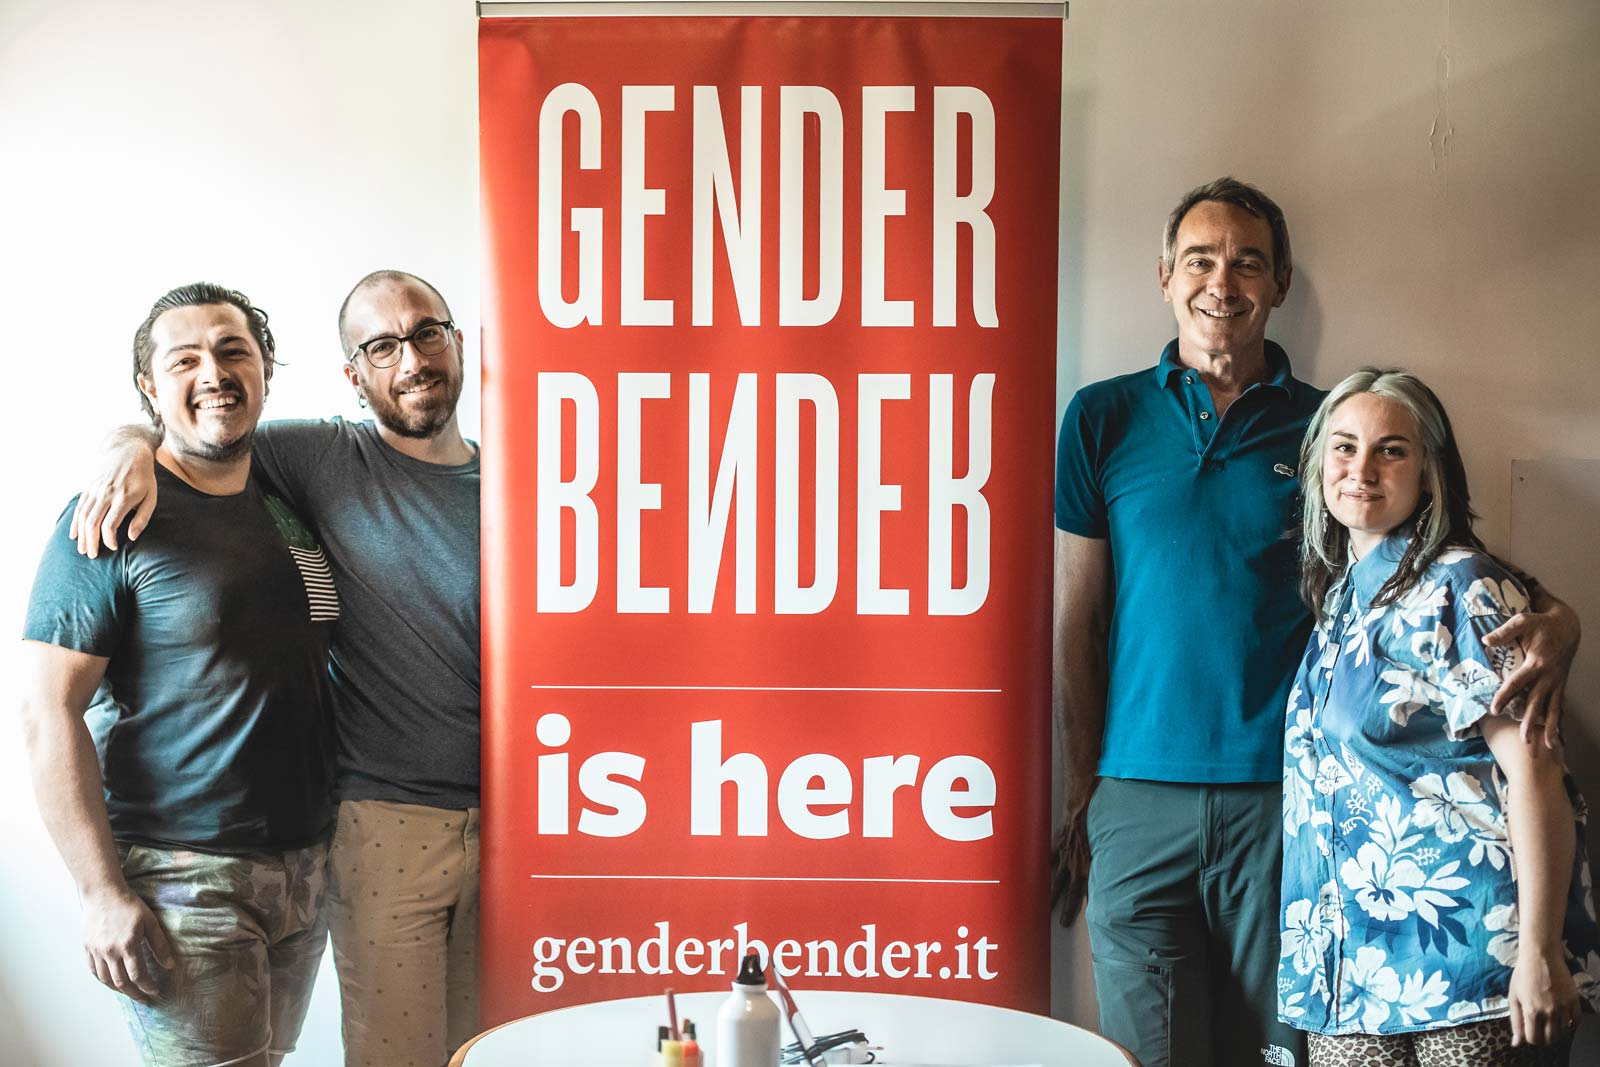 Gallery Gender Bender